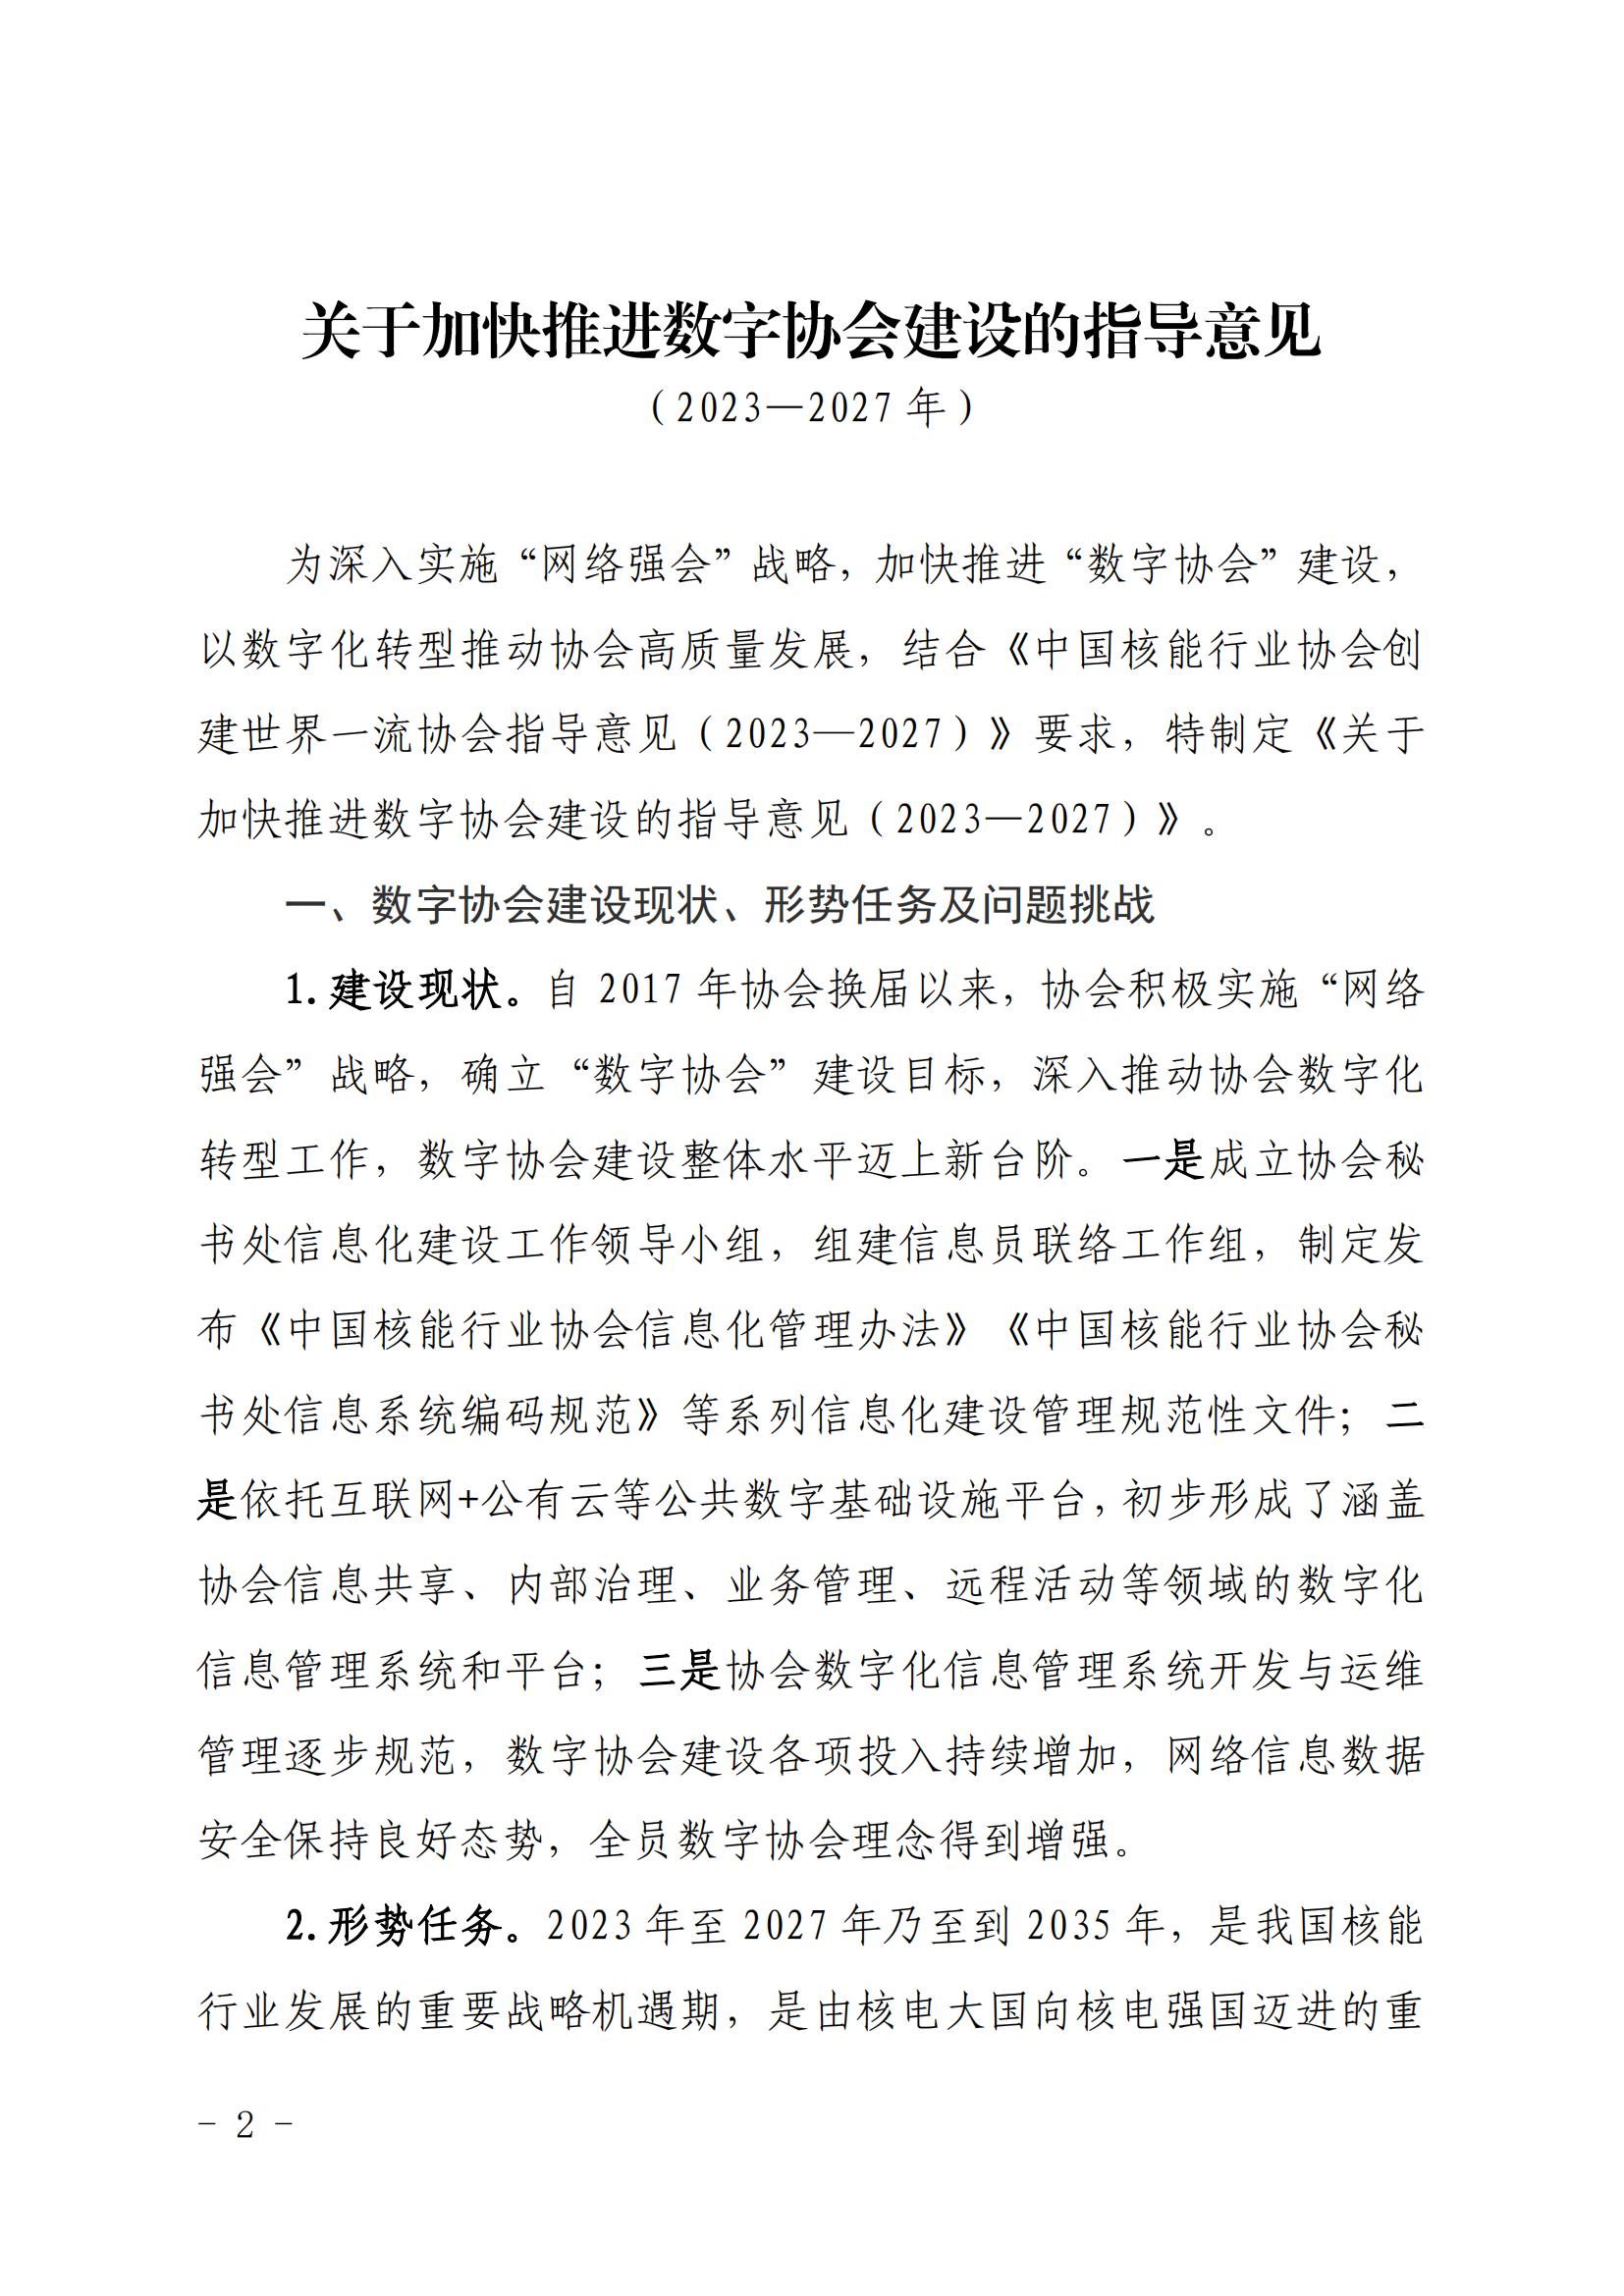 核协信息发〔2023〕570号 关于印发《中国核能行业协会数字协会建设指导意见（2023-2027年）》的通知_01.jpg